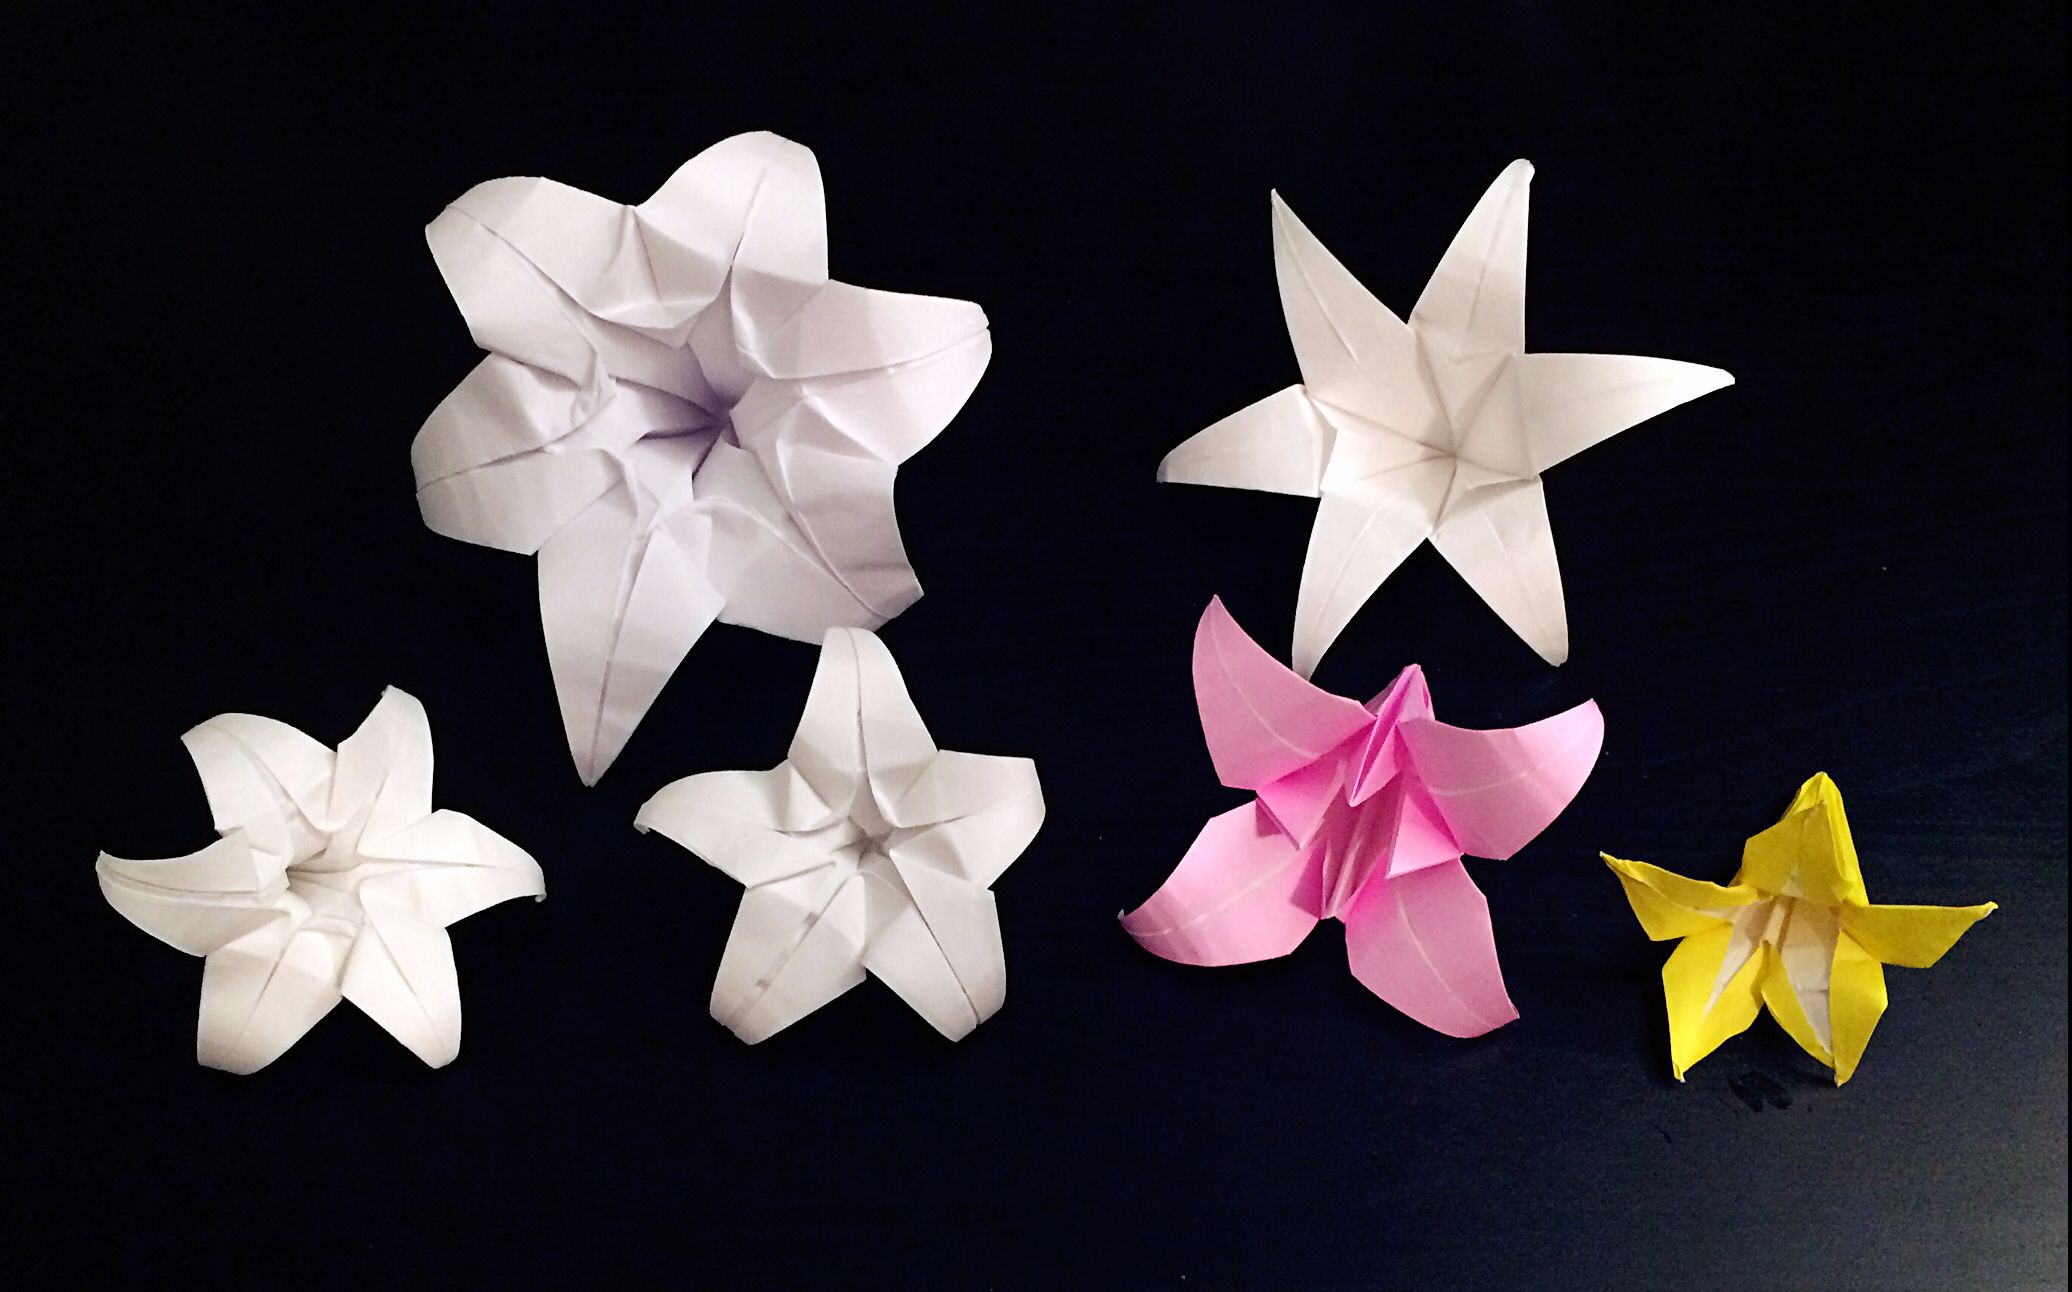 纸花的折法 漂亮的纸花简单易学_伊秀视频|yxlady.com